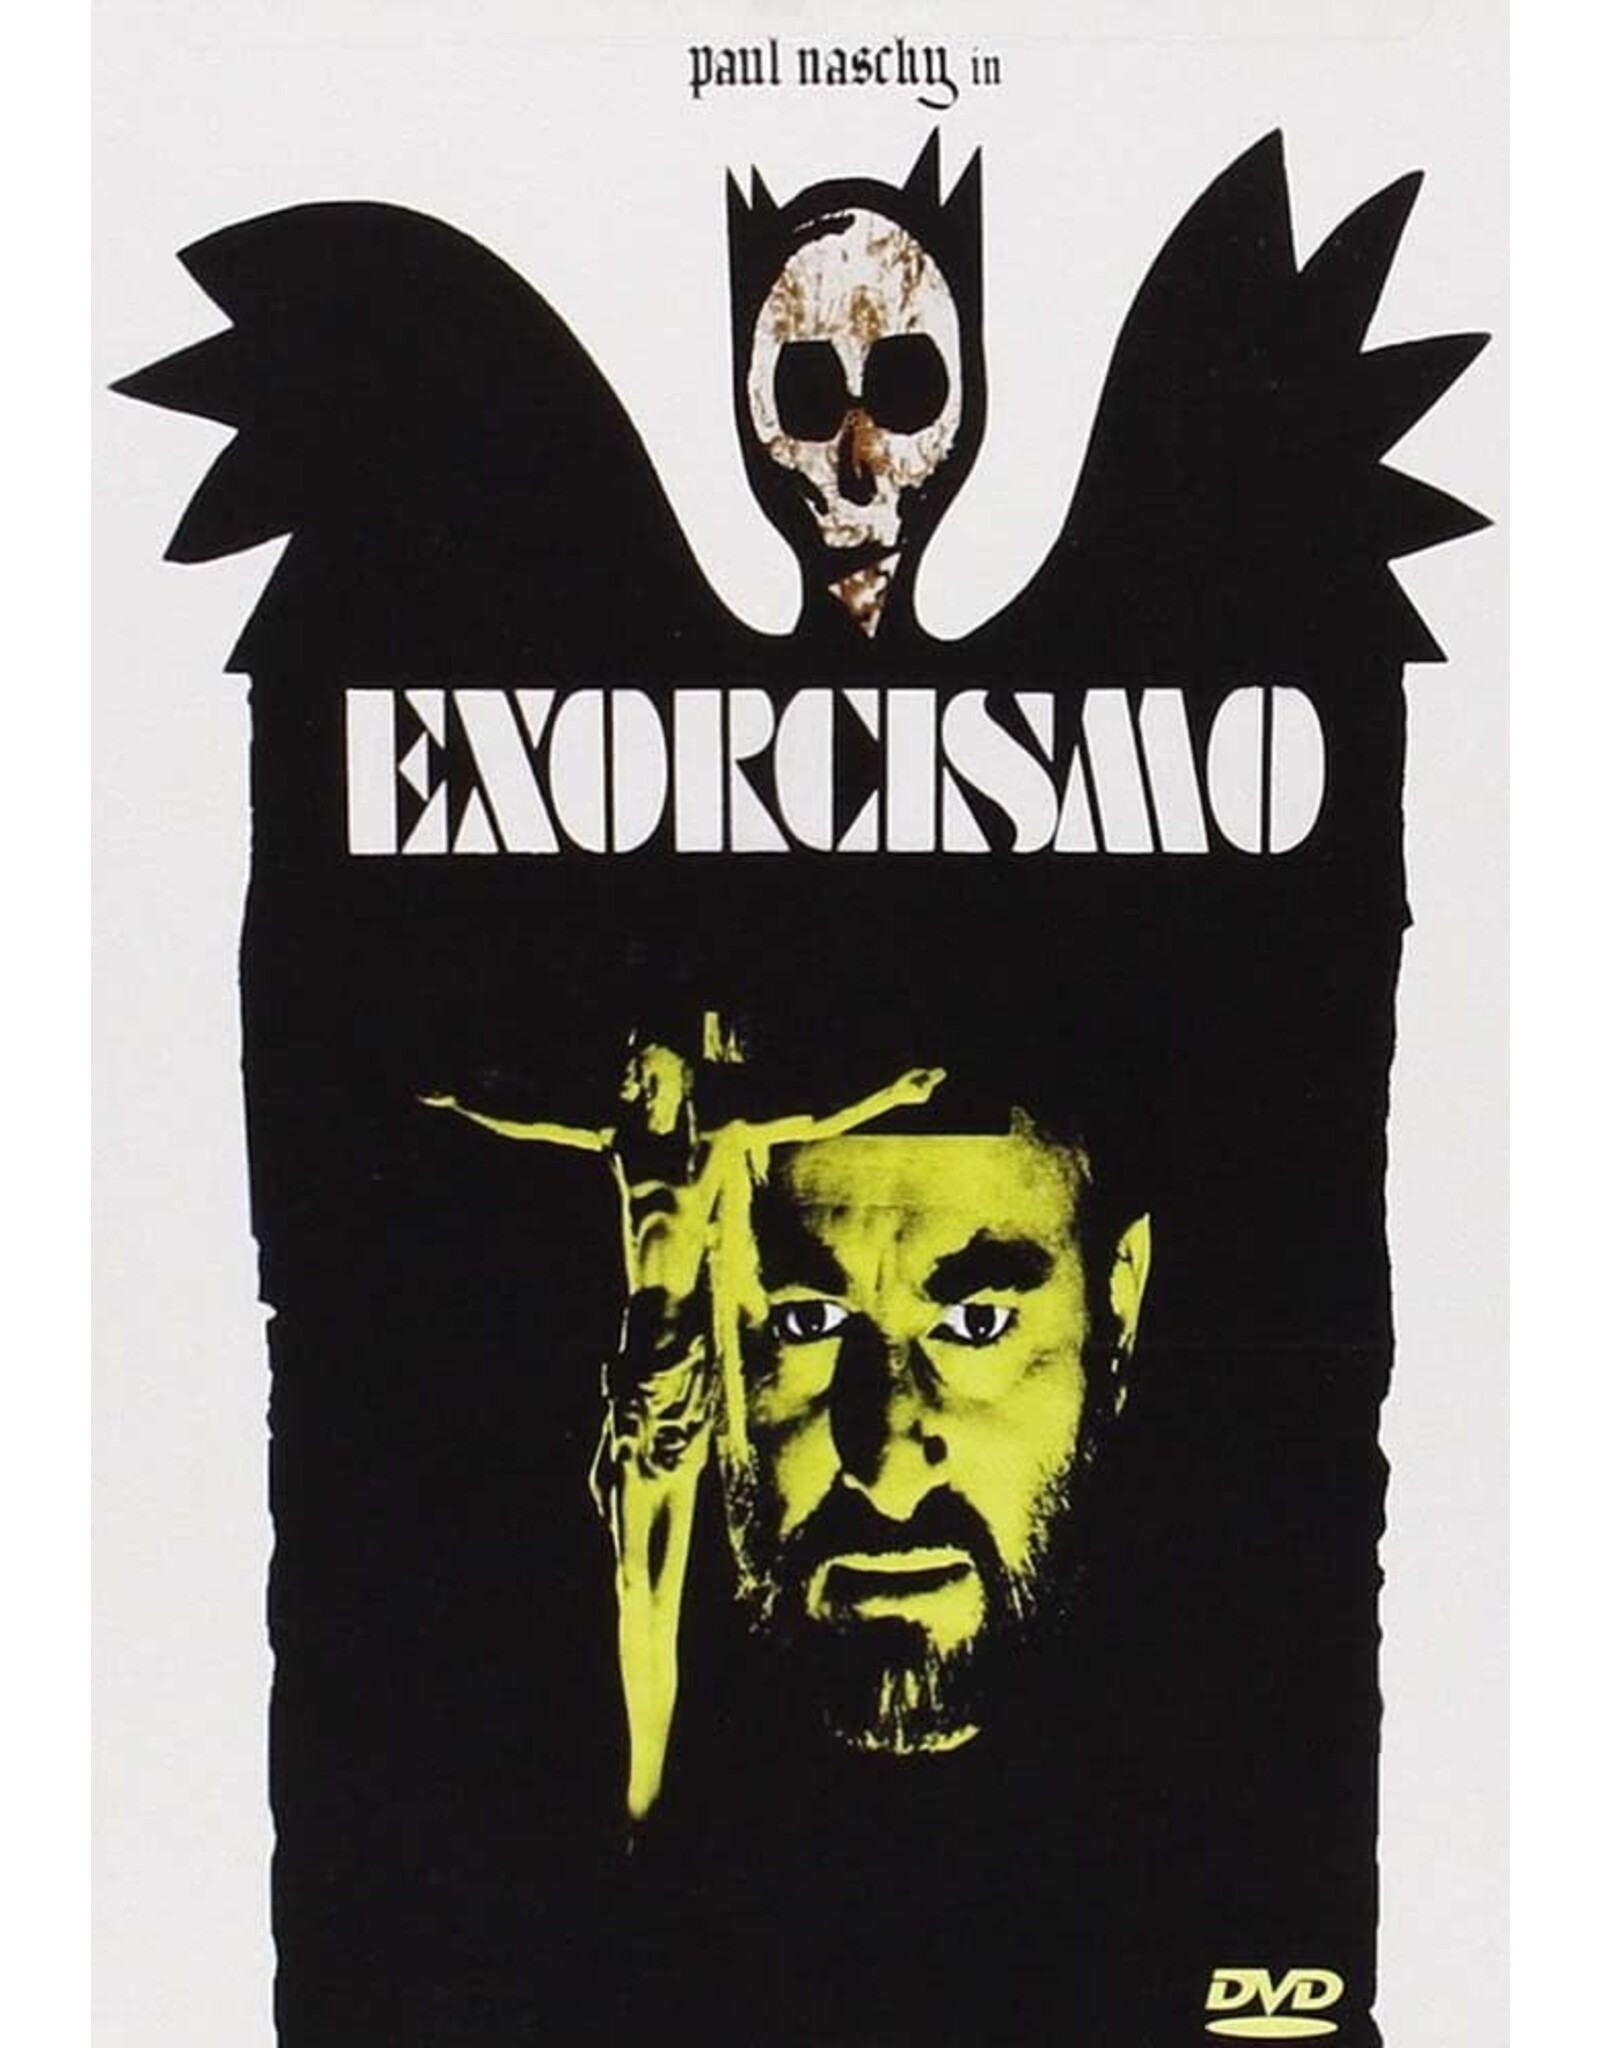 Horror Exorcismo (Used)